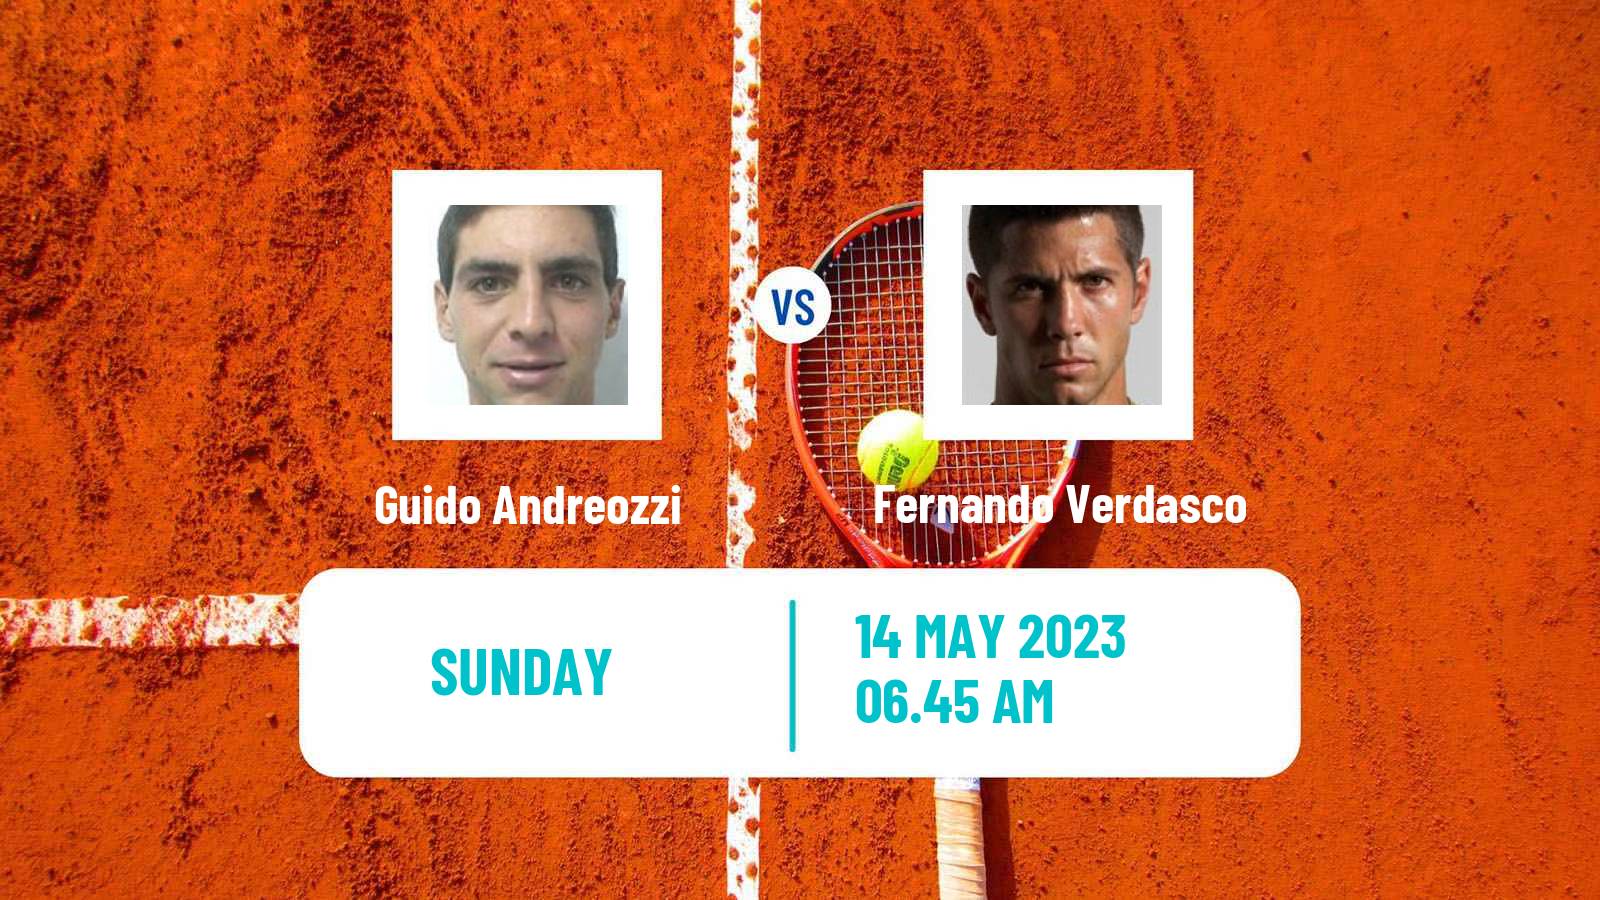 Tennis ATP Challenger Guido Andreozzi - Fernando Verdasco